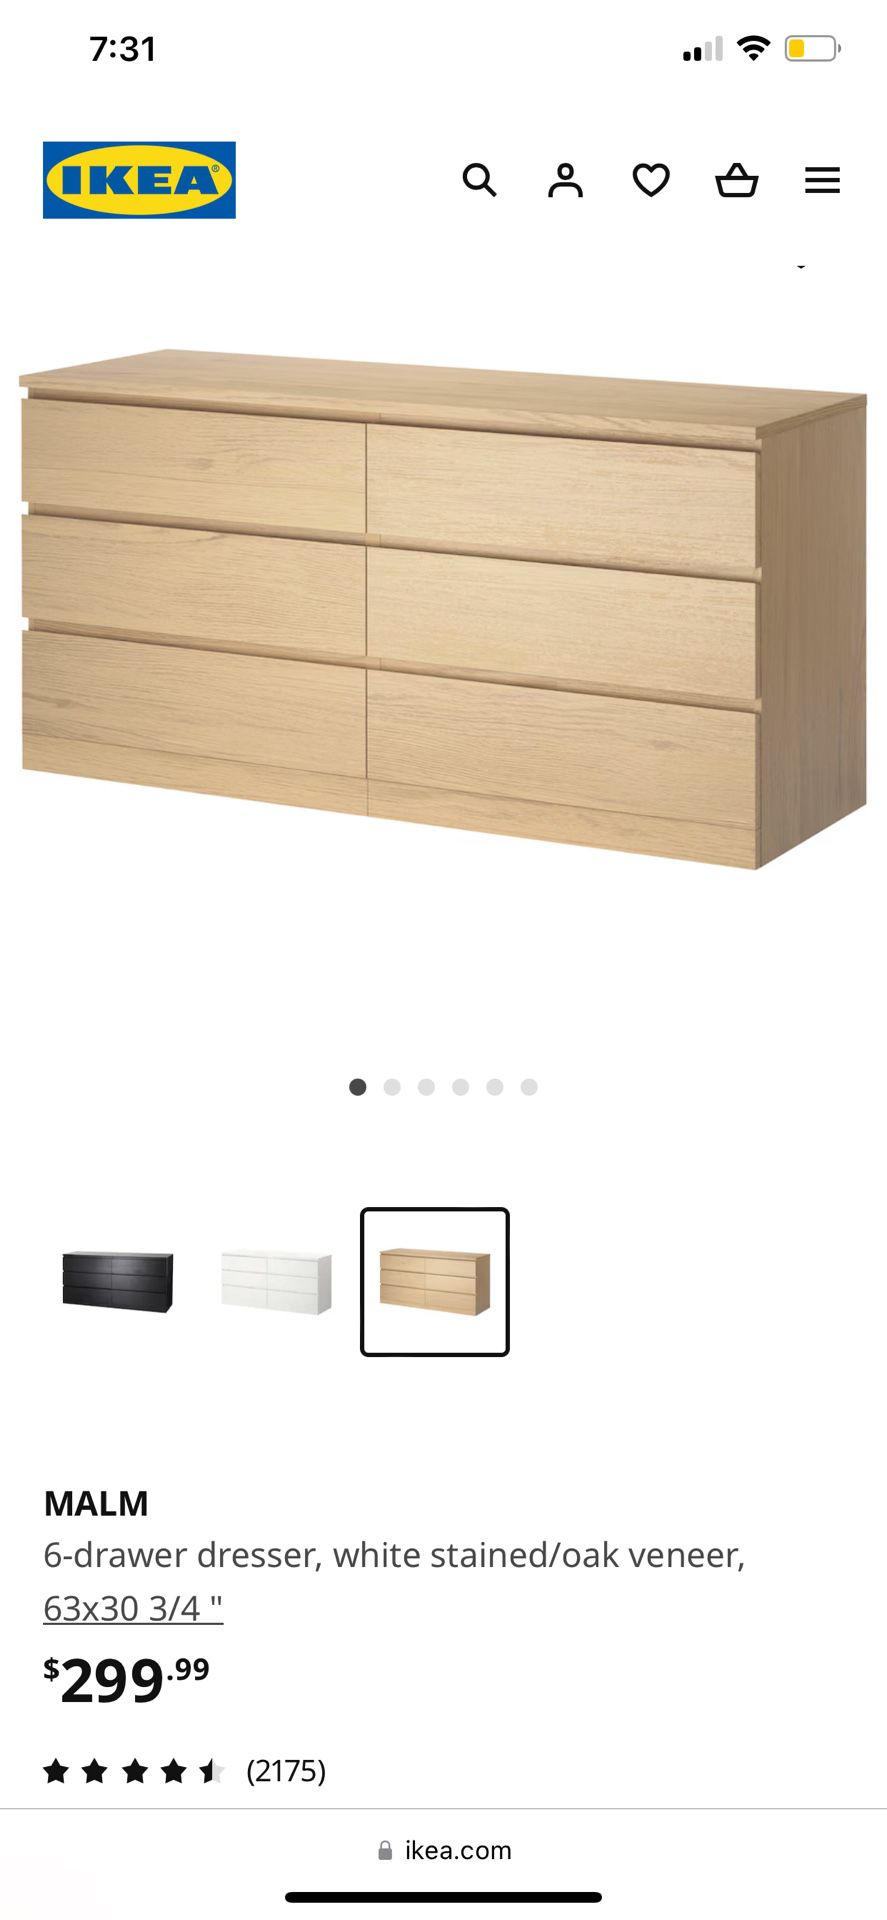 IKEA MALM Dressers